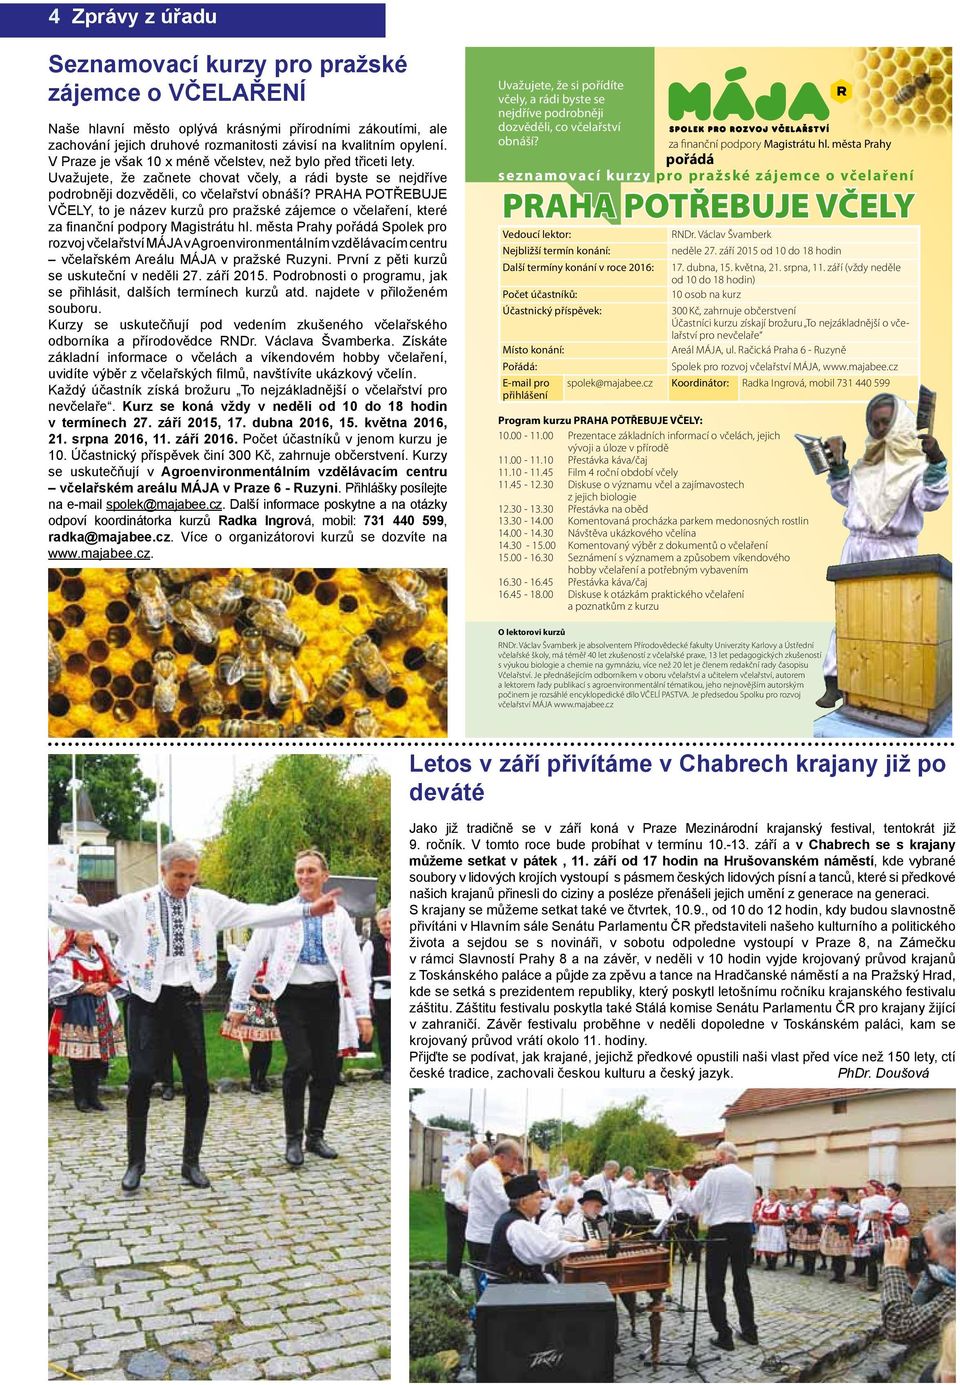 PRAHA POTŘEBUJE VČELY, to je název kurzů pro pražské zájemce o včelaření, které za finanční podpory Magistrátu hl.